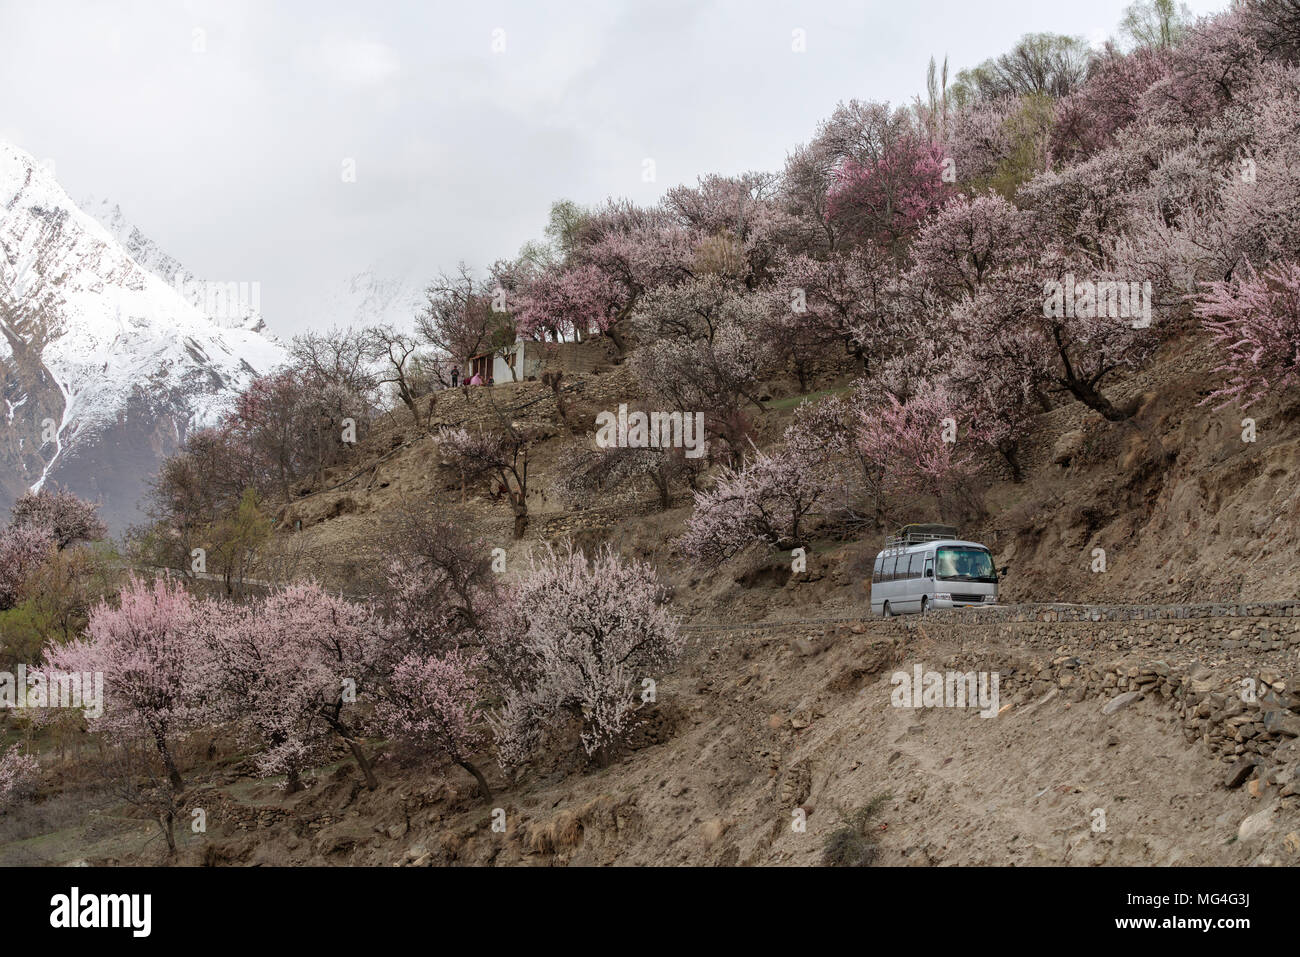 Voyageant dans la saison du printemps, bus touristique de la conduite sur route de campagne avec les côtés plein de cherry blossom tree à Nakar valley au Pakistan Banque D'Images